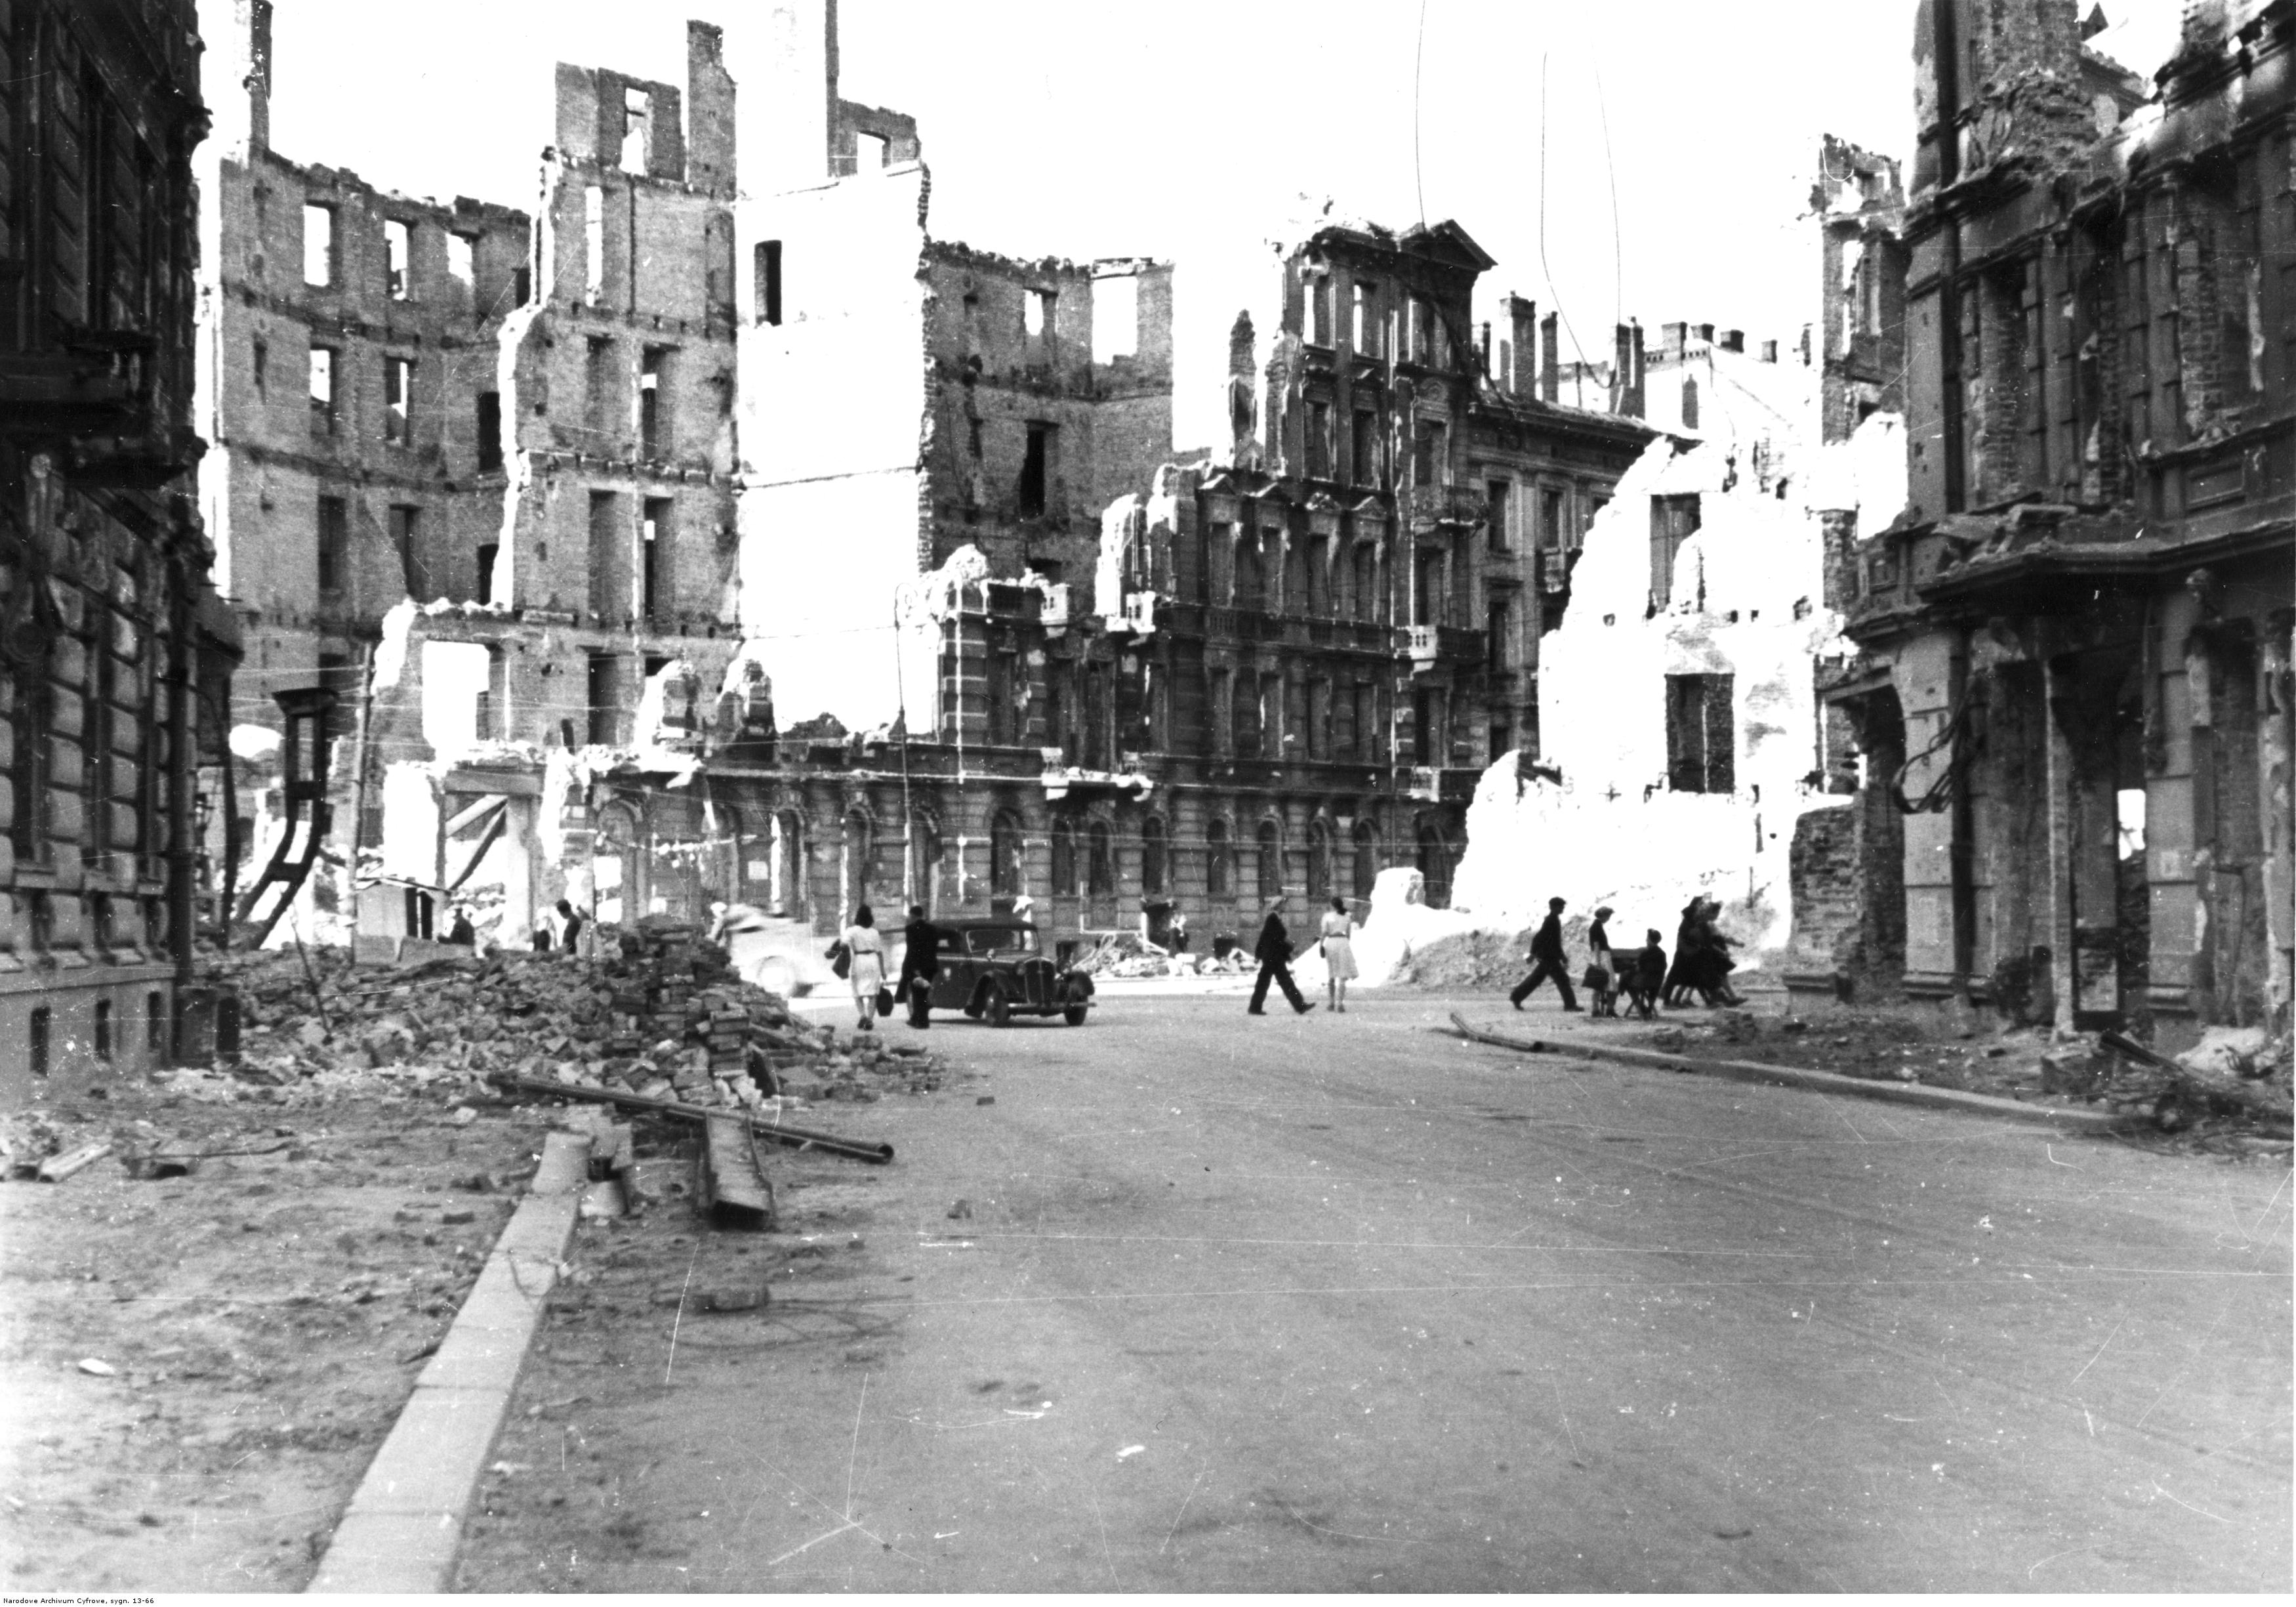 Widok ulic Warszawy w 1945 roku - zrujnowane budynki. Widoczne skrzyżowanie ulic: Śniadeckich i Koszykowej. Foto: NAC